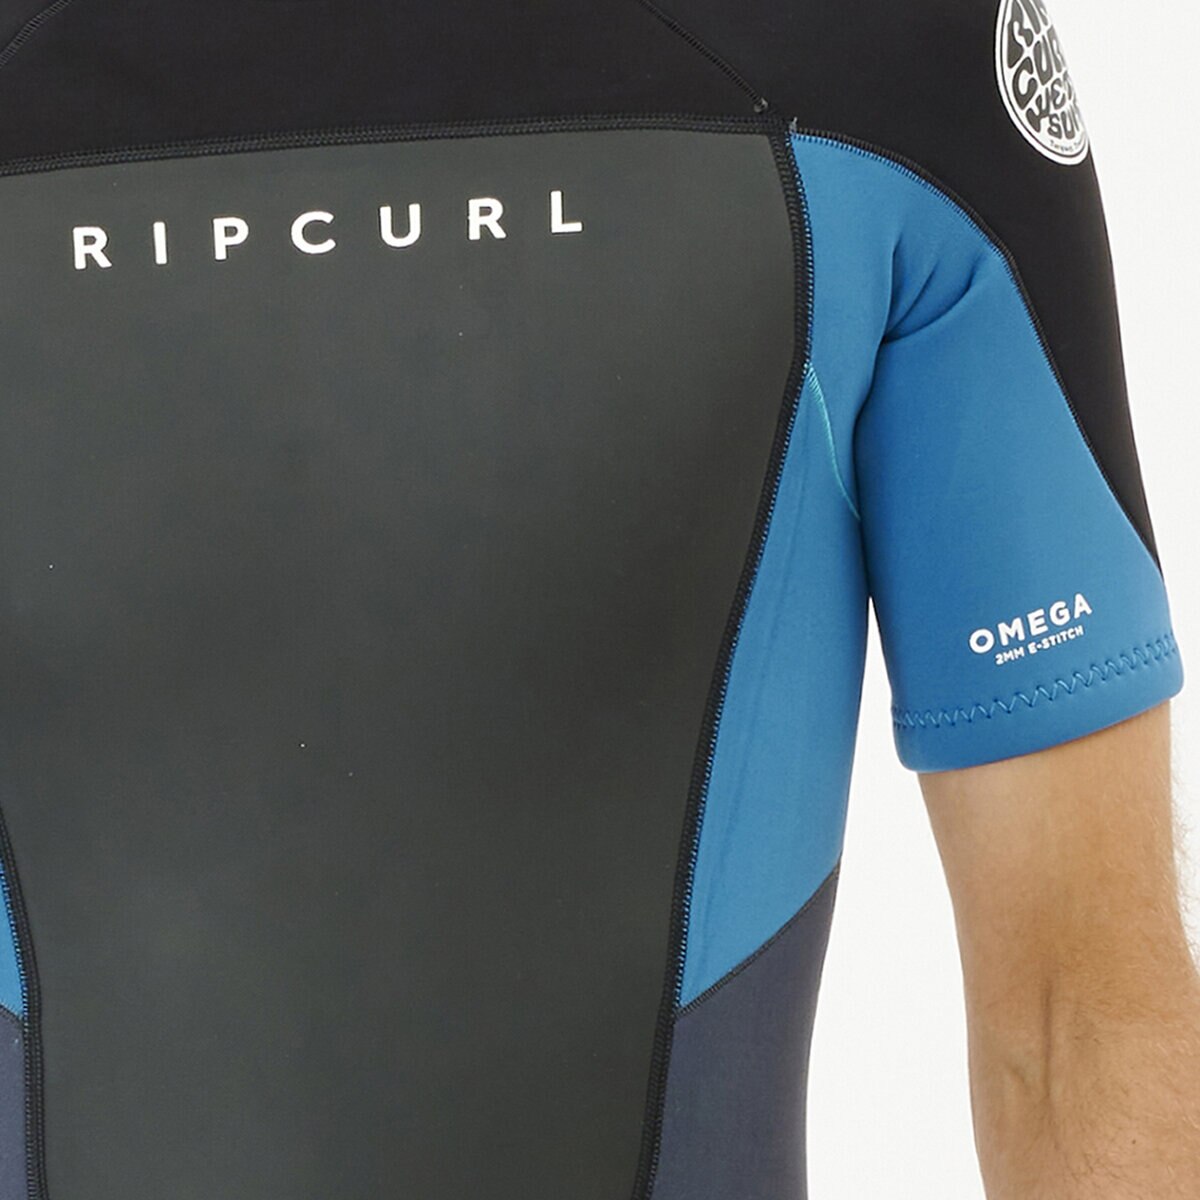 リップカール RIPCURL メンズ OMEGA 2mm バックジップ ショートスリーブ スプリング ウェットスーツ BLUE 即納送料無料!